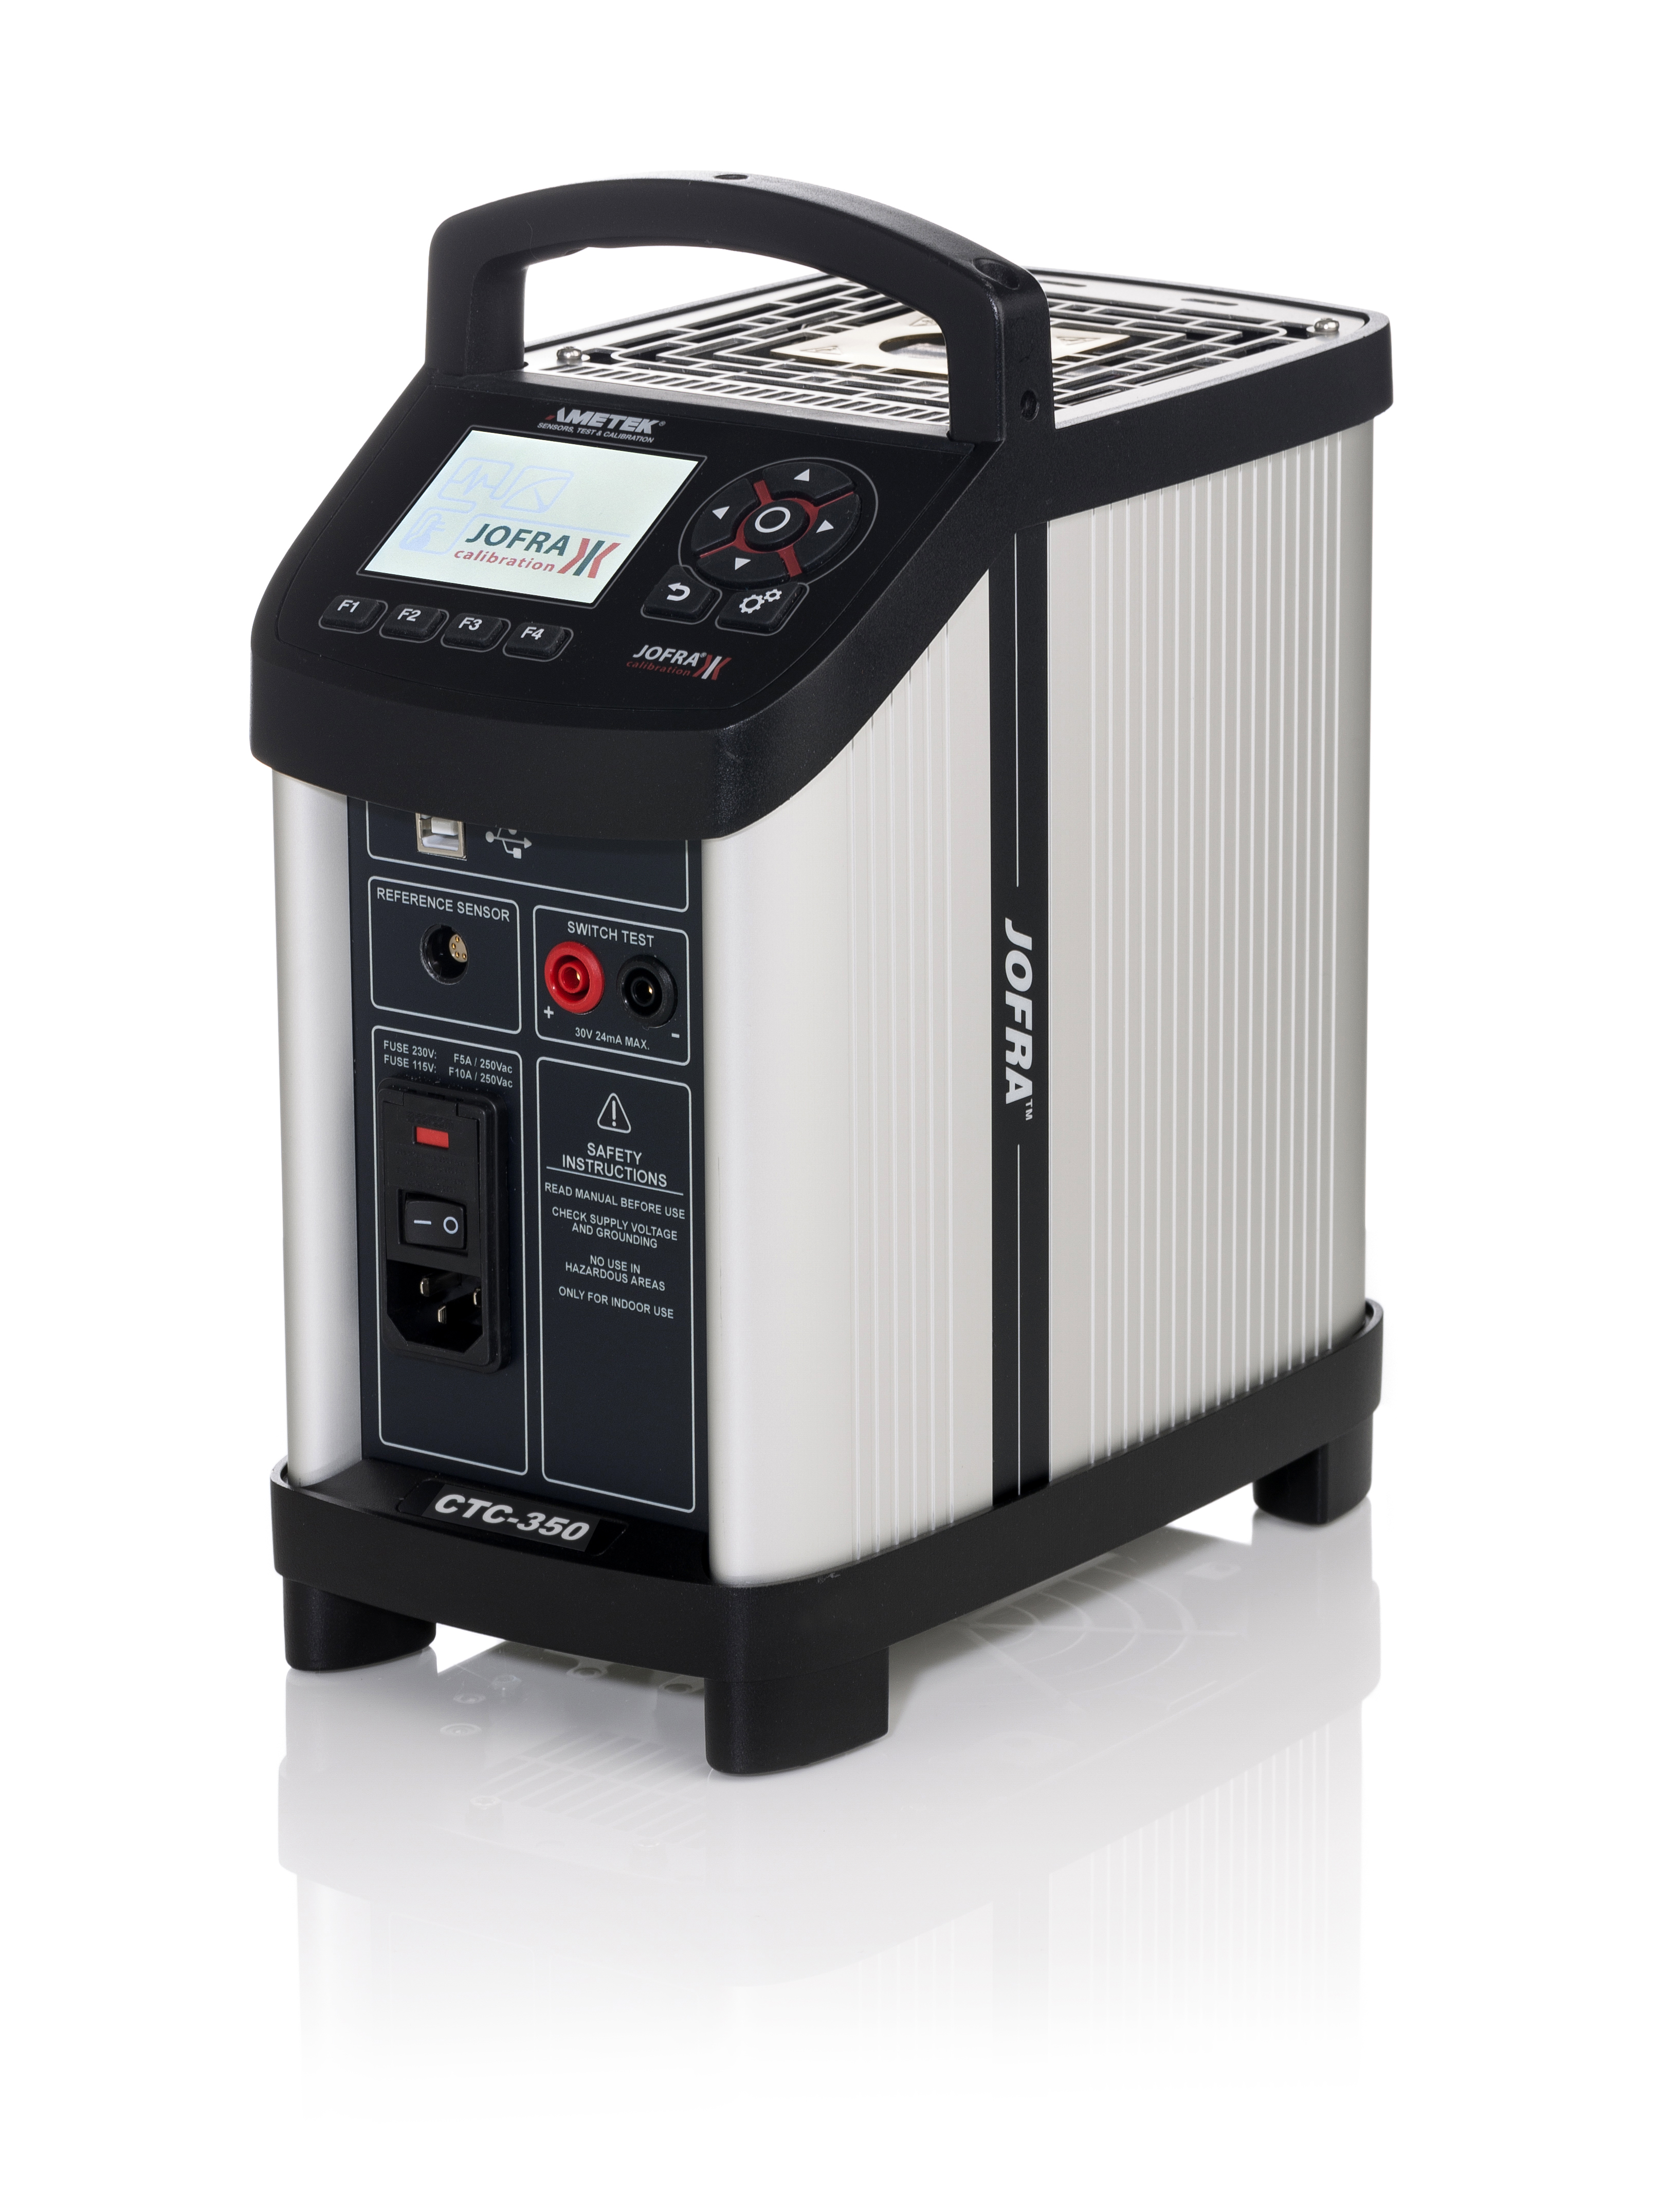 Ametek Jofra CTC350 Dryblock Temperature Calibrator